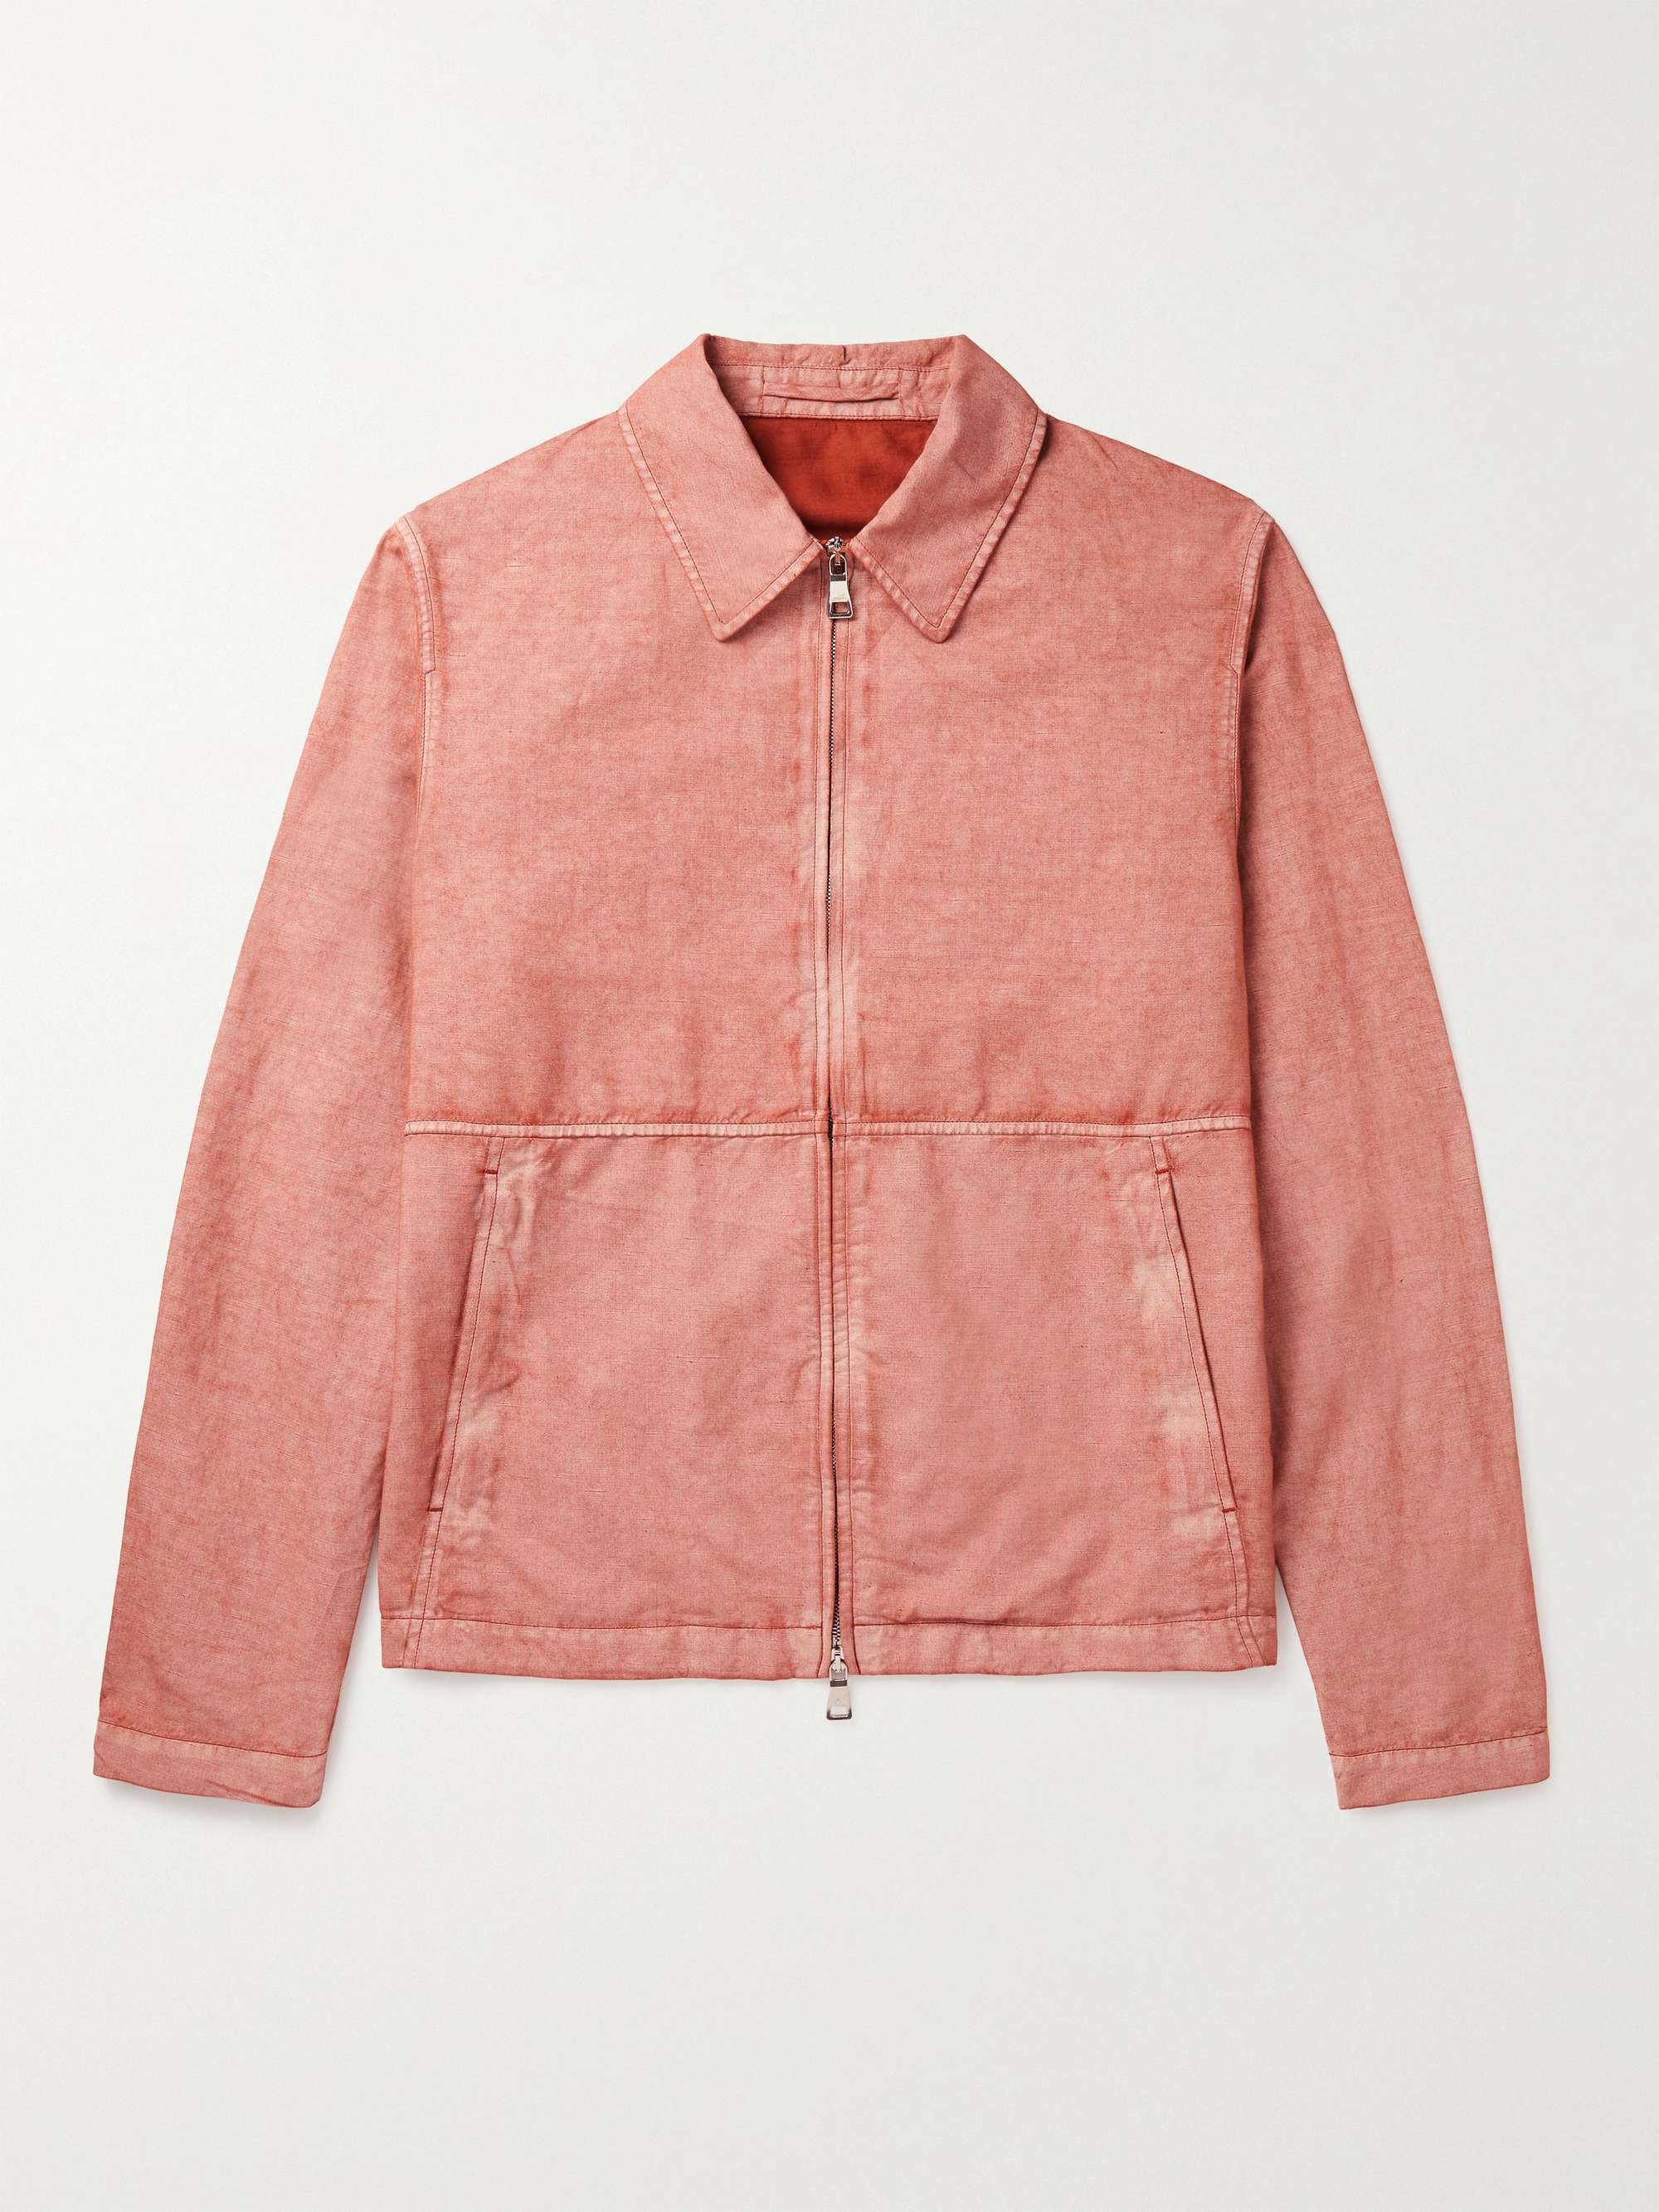 MR P. Resist-Dyed Cotton and Linen-Blend Blouson Jacket